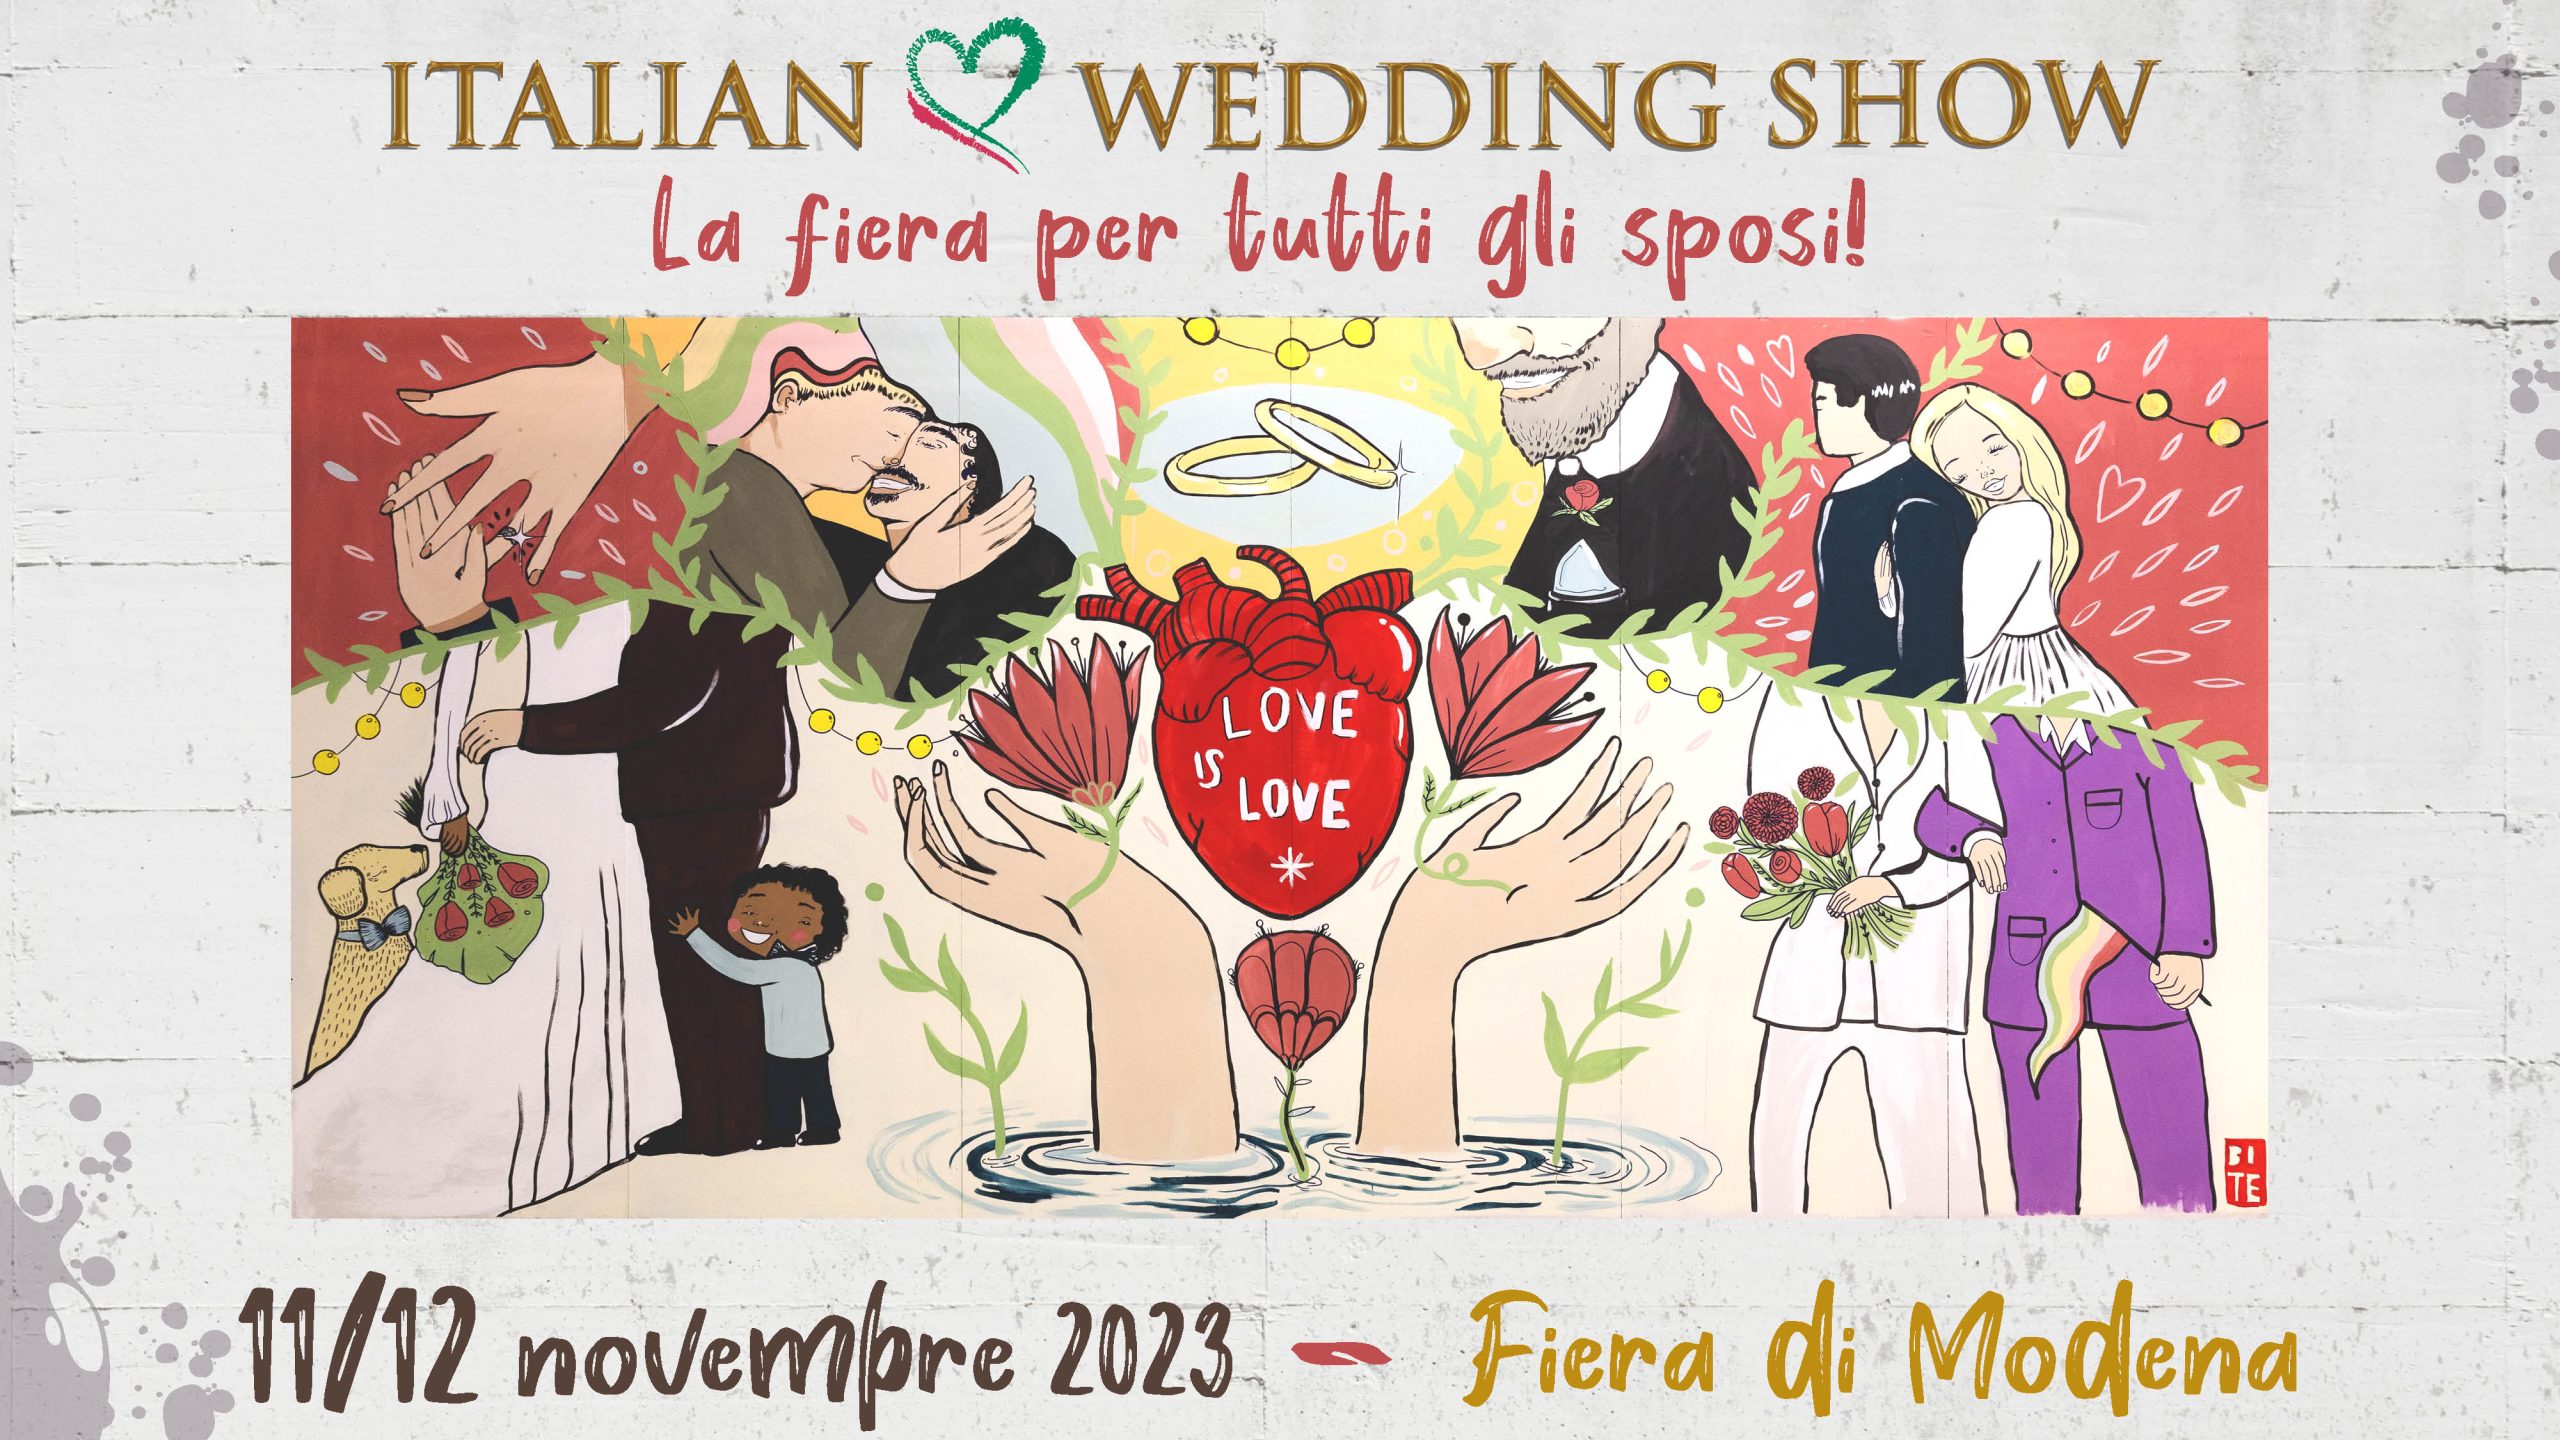 Italian Wedding Show, la fiera per tutti gli sposi torna a Modena